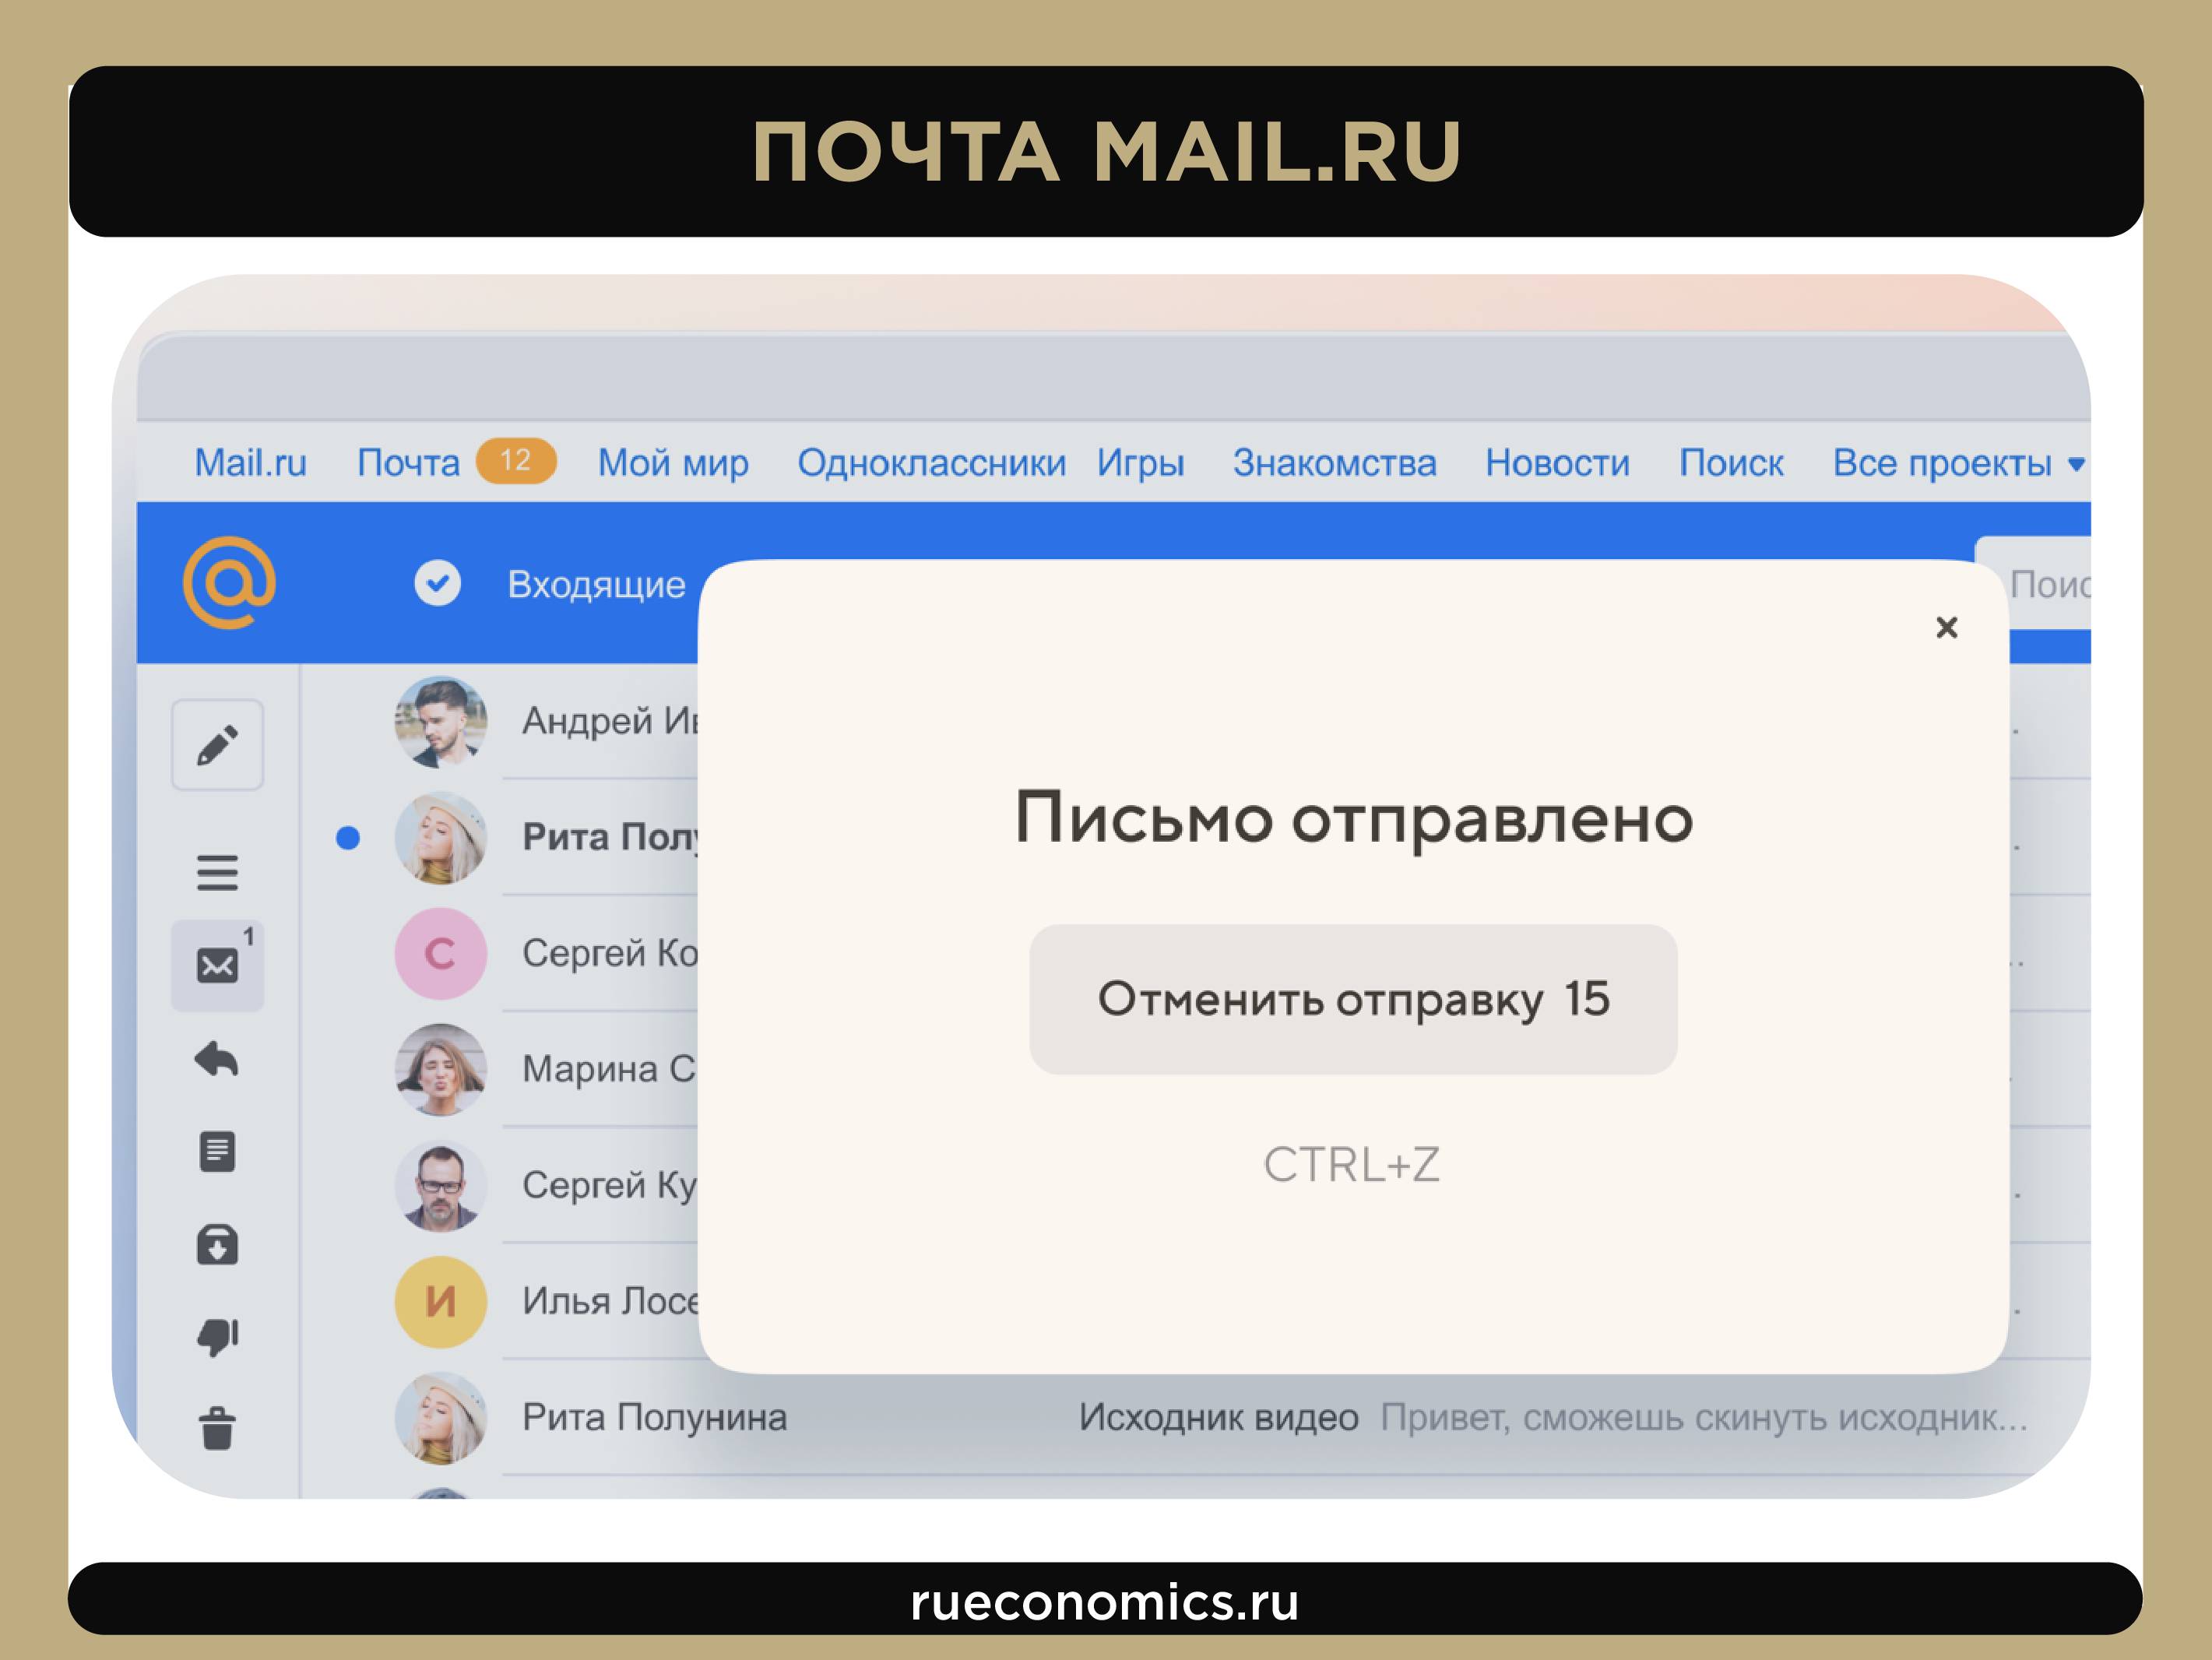 El camino del Grupo Mail.ru a VK: cómo el servicio postal se convirtió en una corporación multinacional